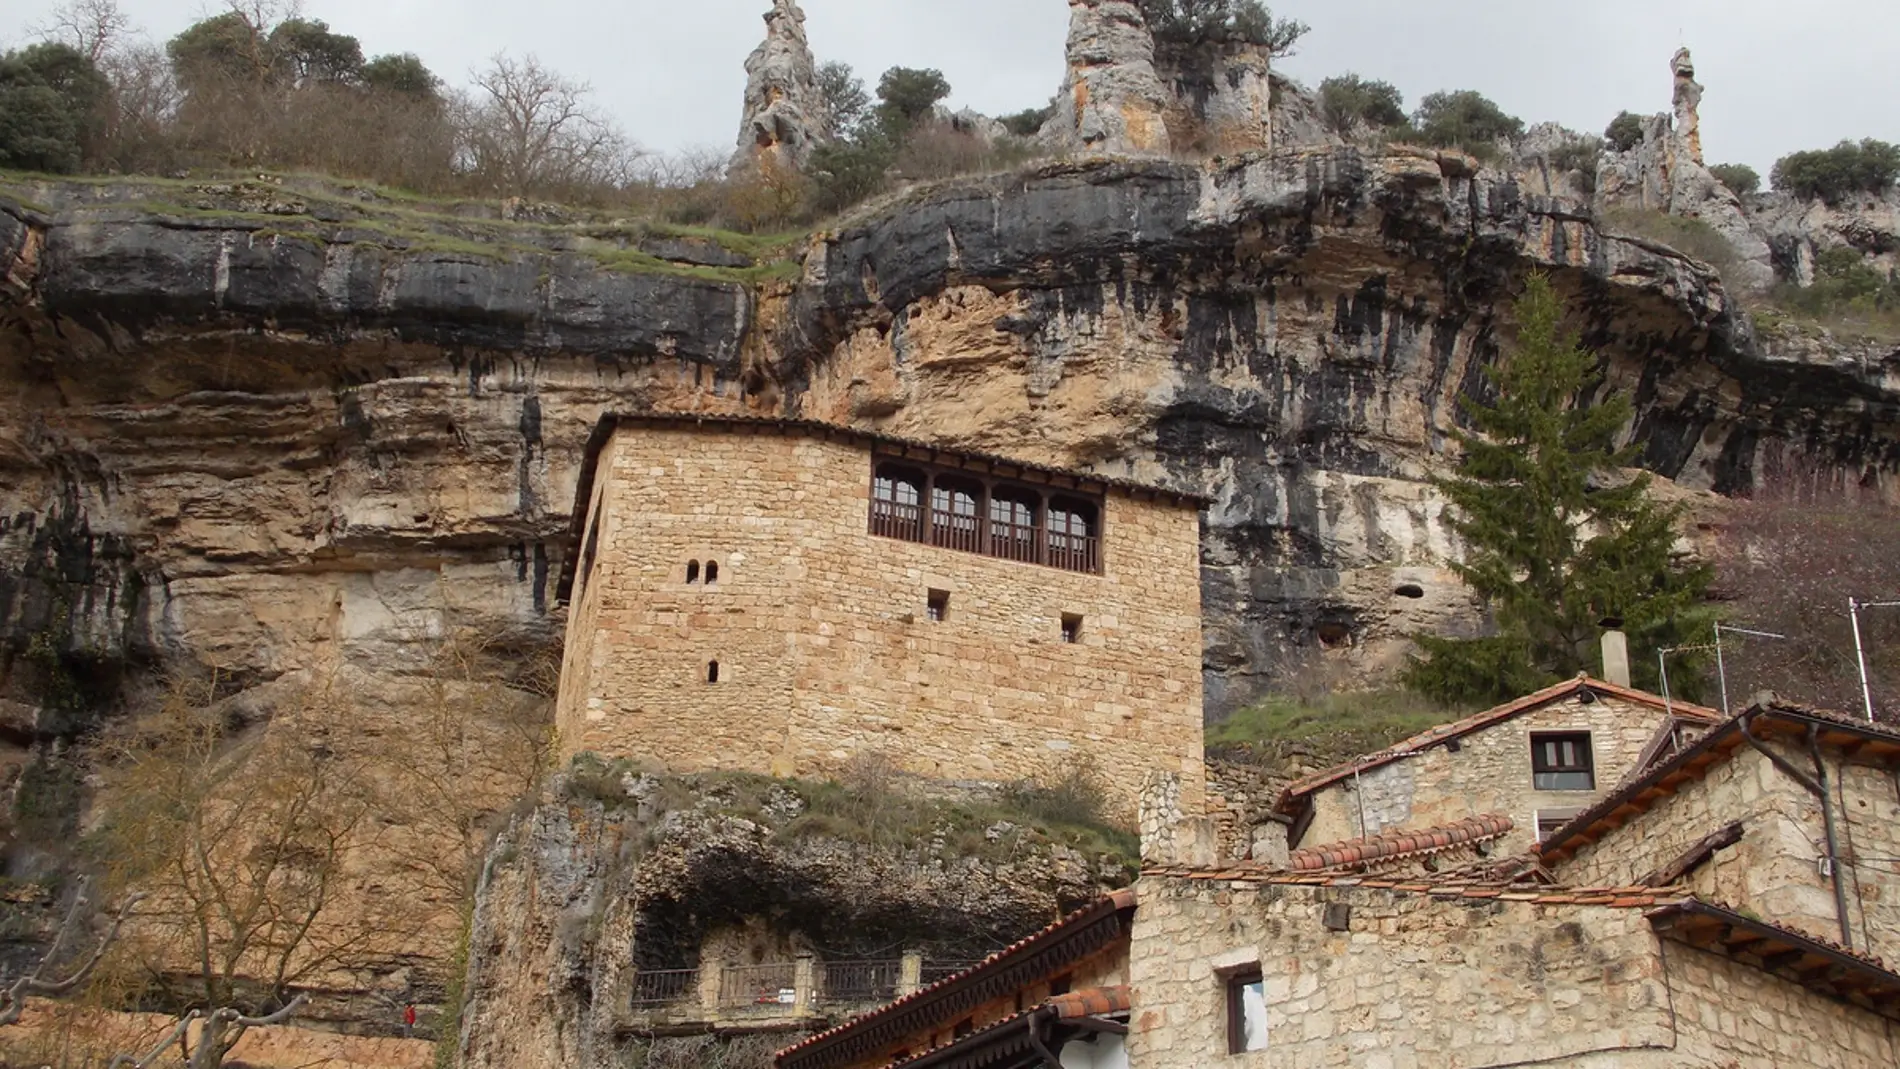 Orbaneja del Castillo, probablemente el pueblo más bonito de la provincia de Burgos